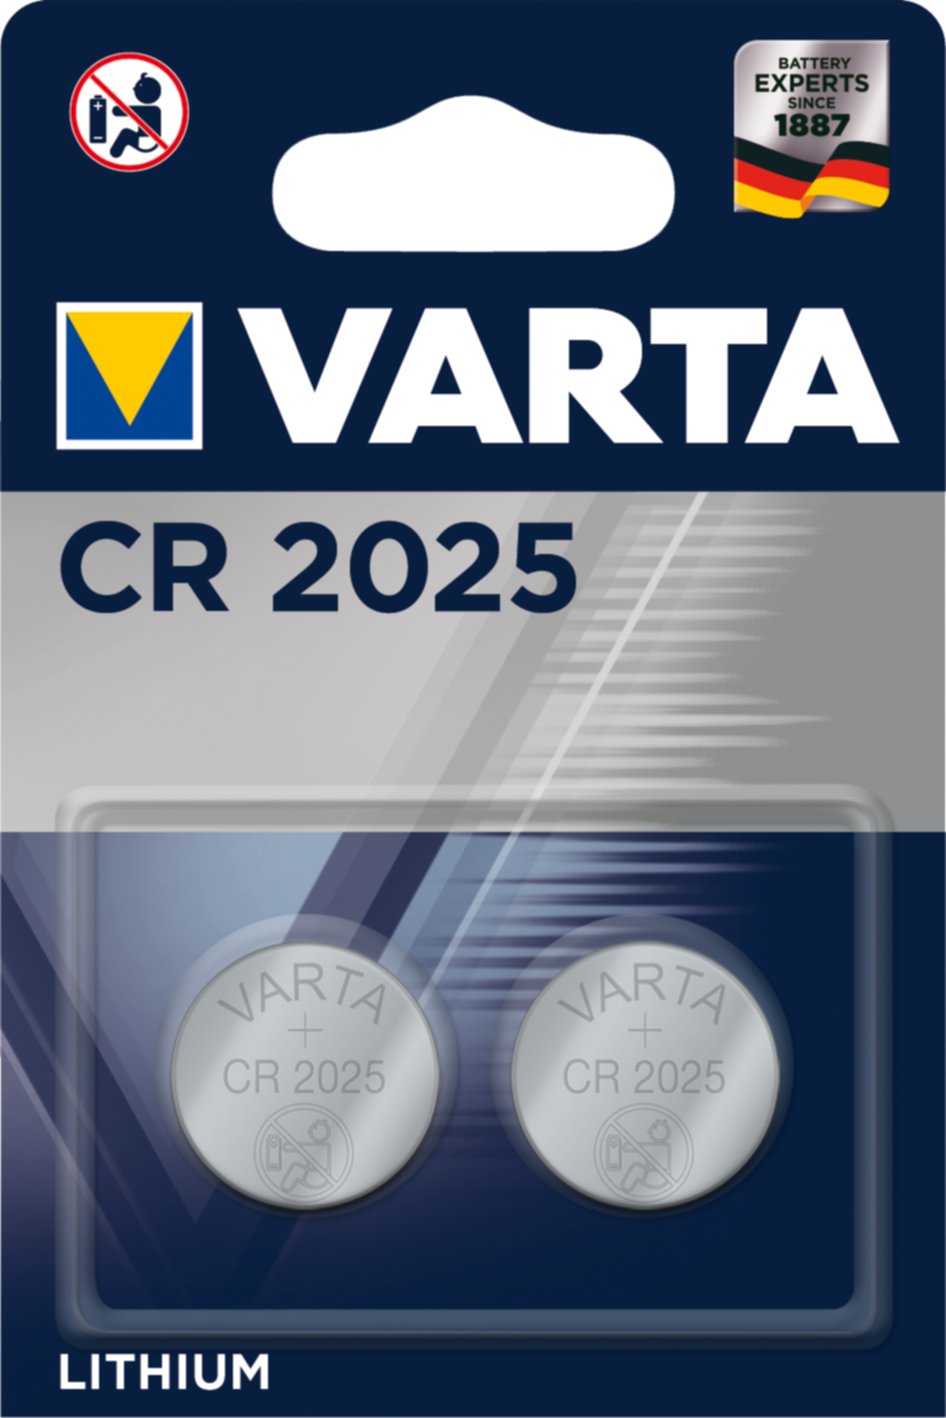 2 piles lithium CR2025 - VARTA